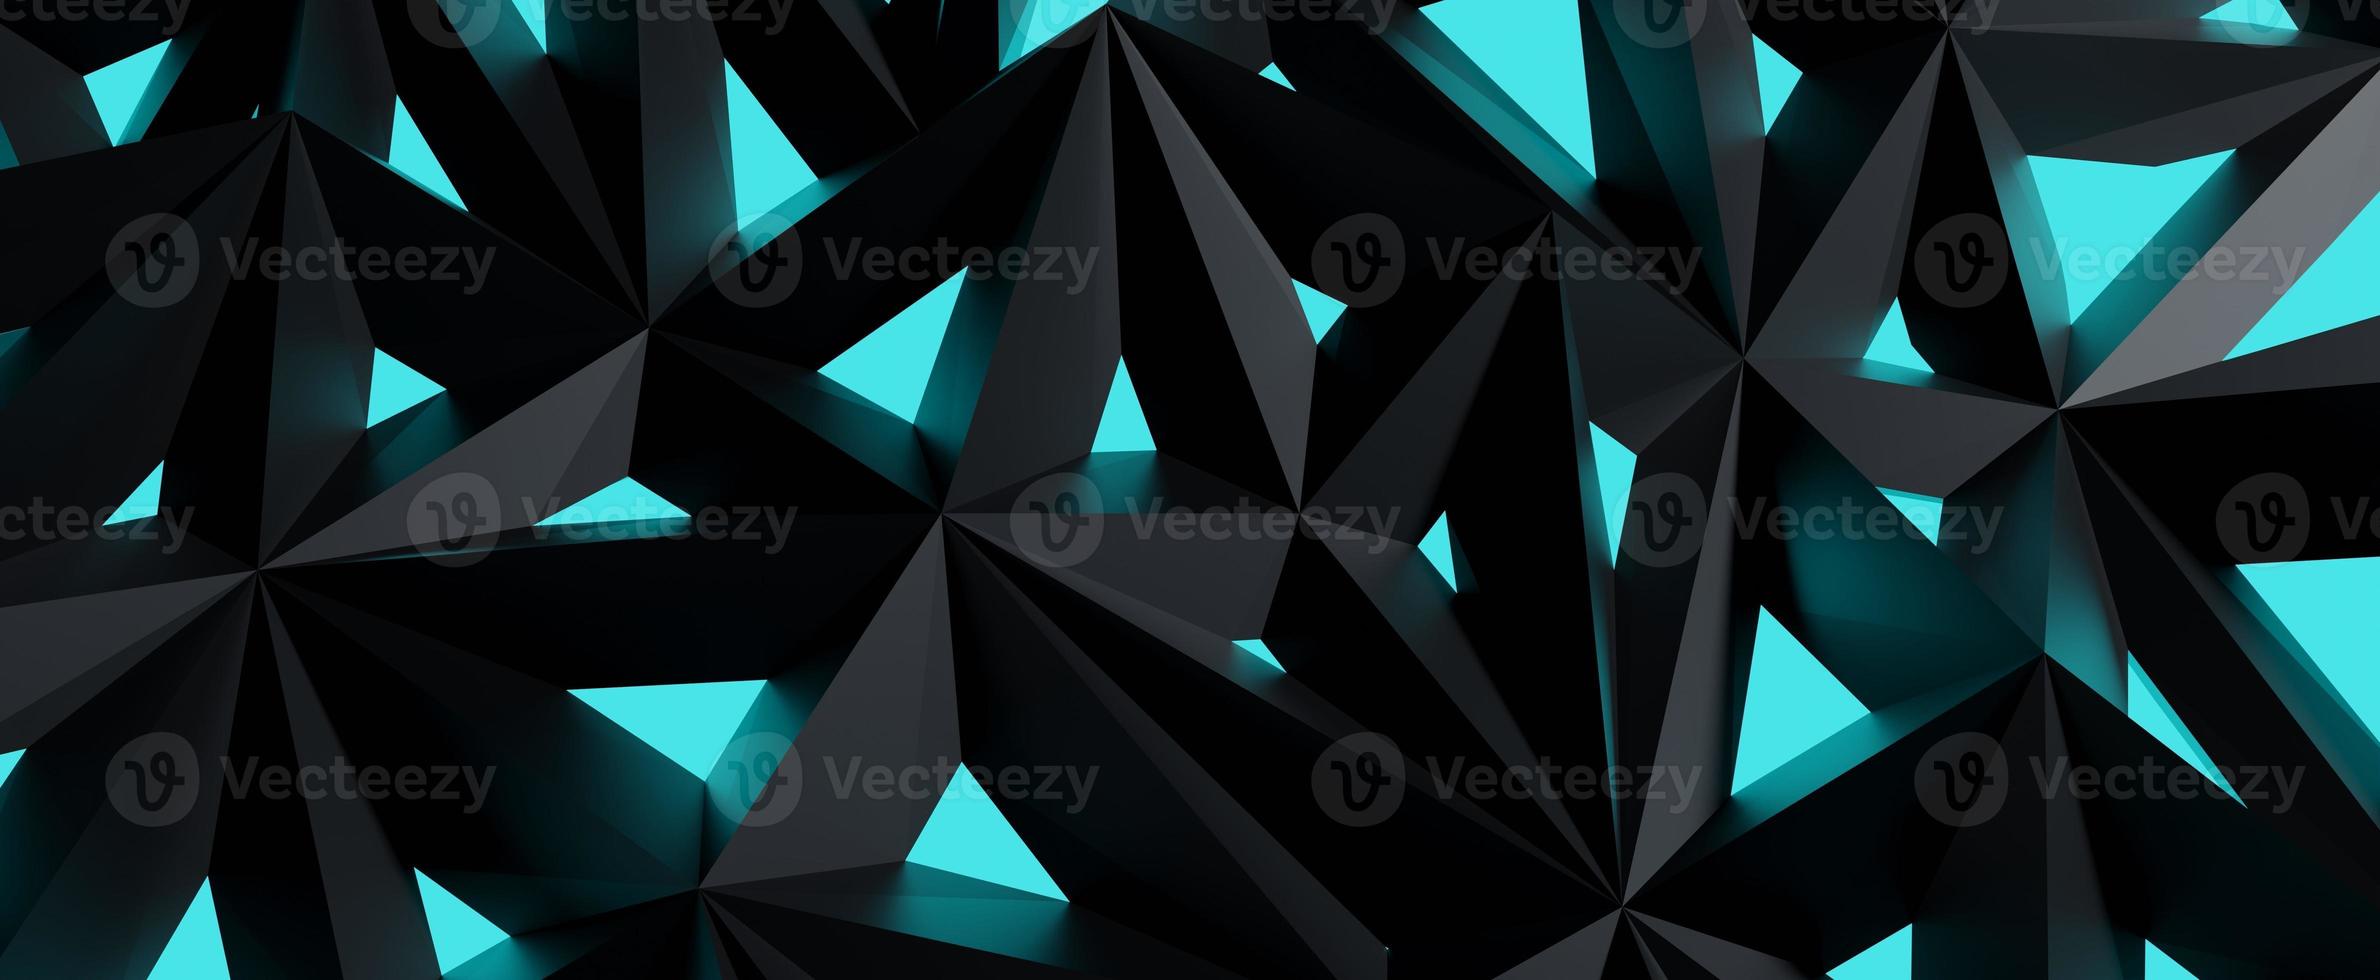 celosía de cristal negro con fondo de brillo azul. estructura de grafito poligonal abstracto con iluminación triangular geométrica de renderizado 3d. nanodiseño futurista de uniones estrechas foto